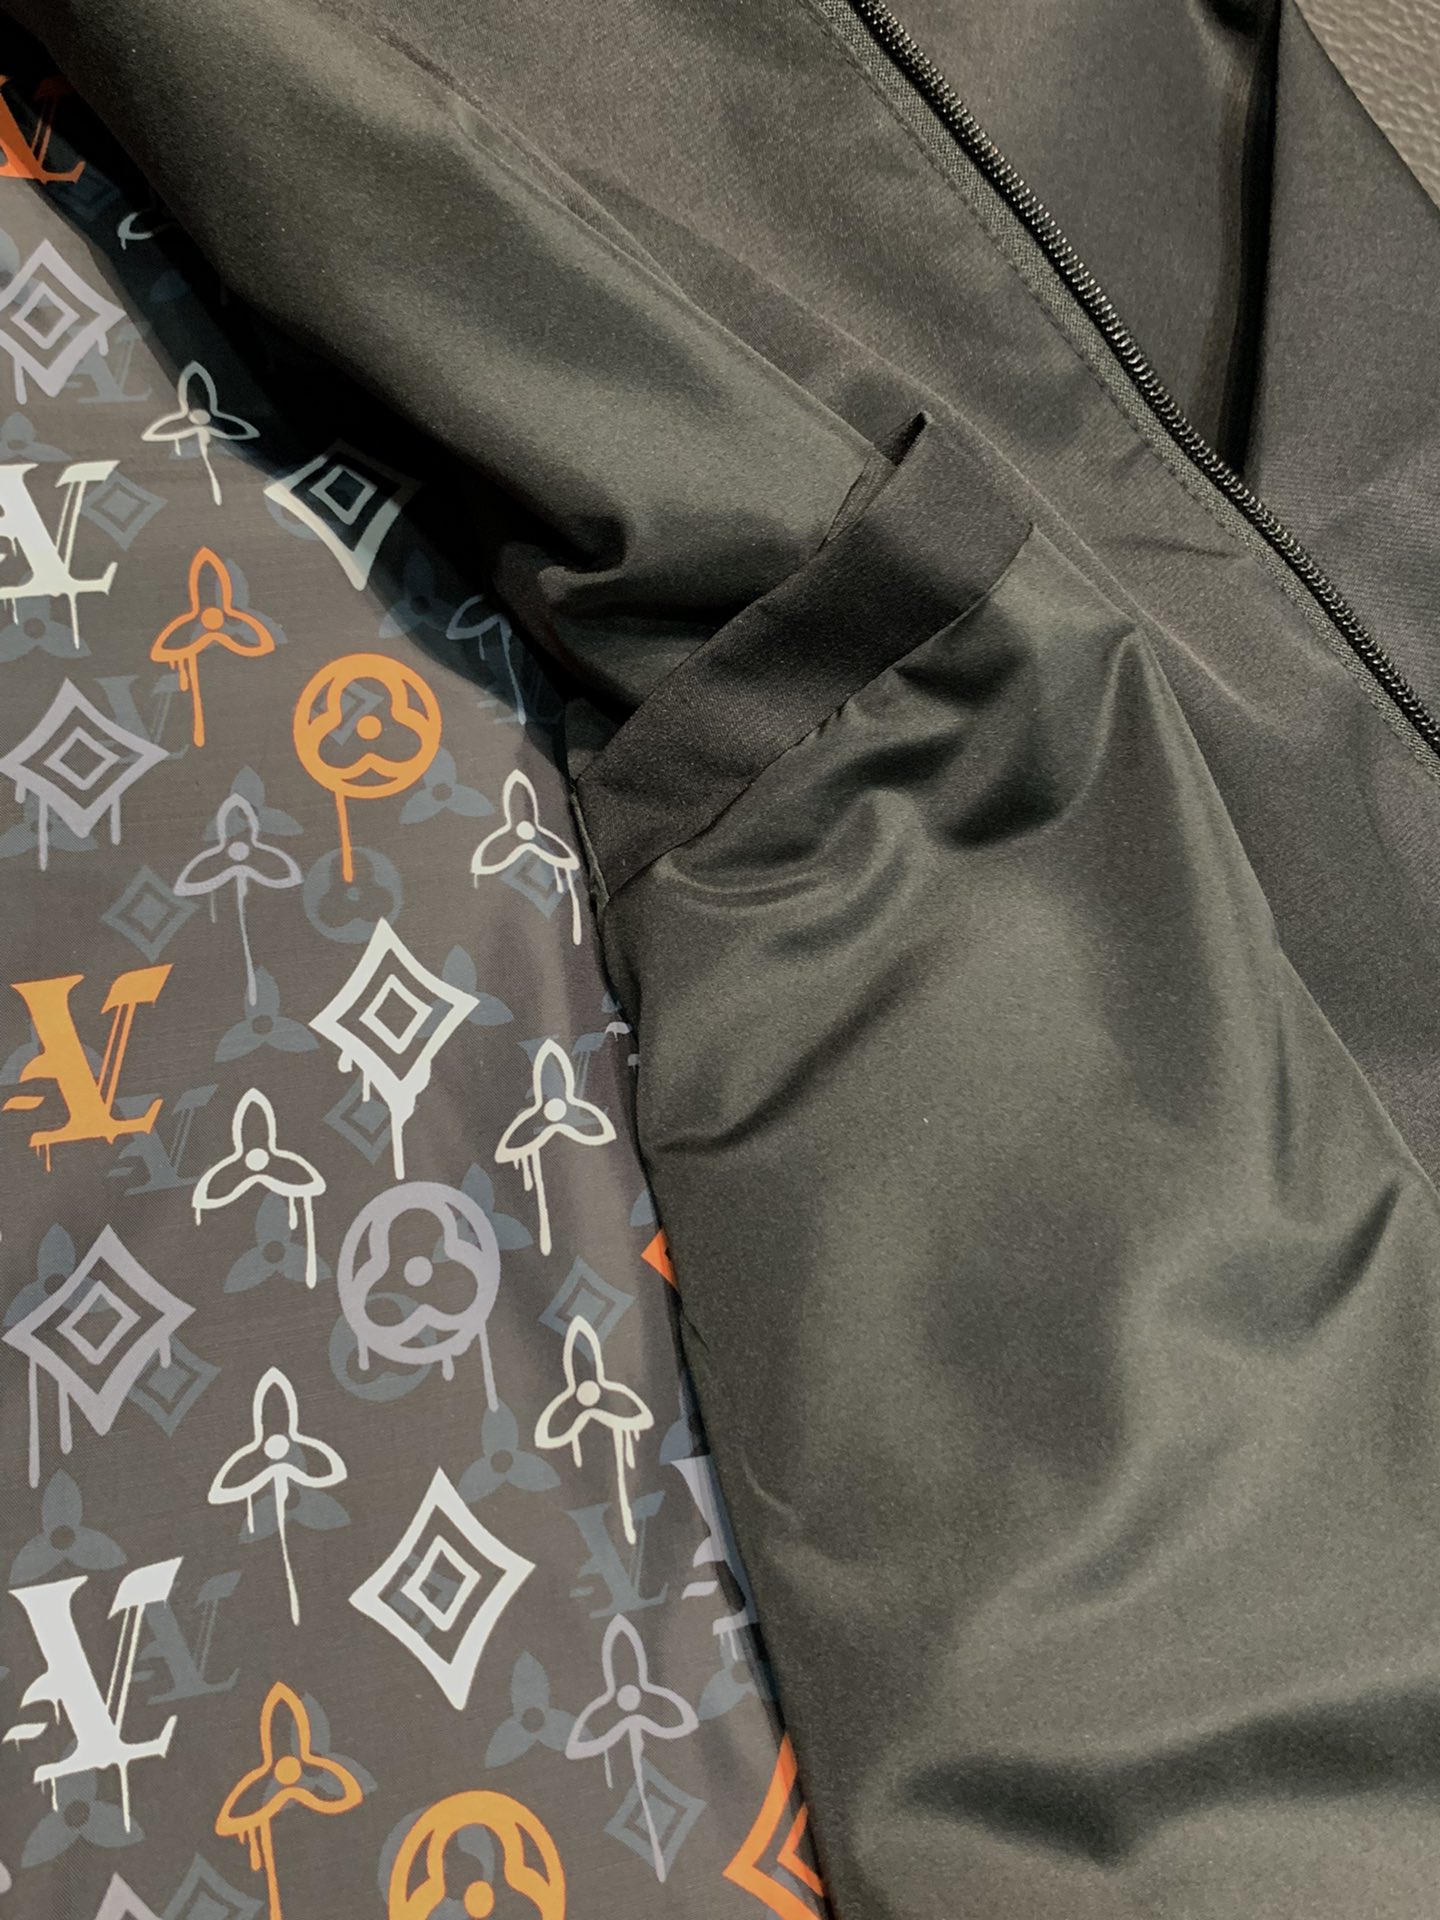 LV路易威登独家专供最新春秋时尚立领夹克经典设计感与颜值爆棚的外套品质更是无法挑剔品控可以直接入手不容过